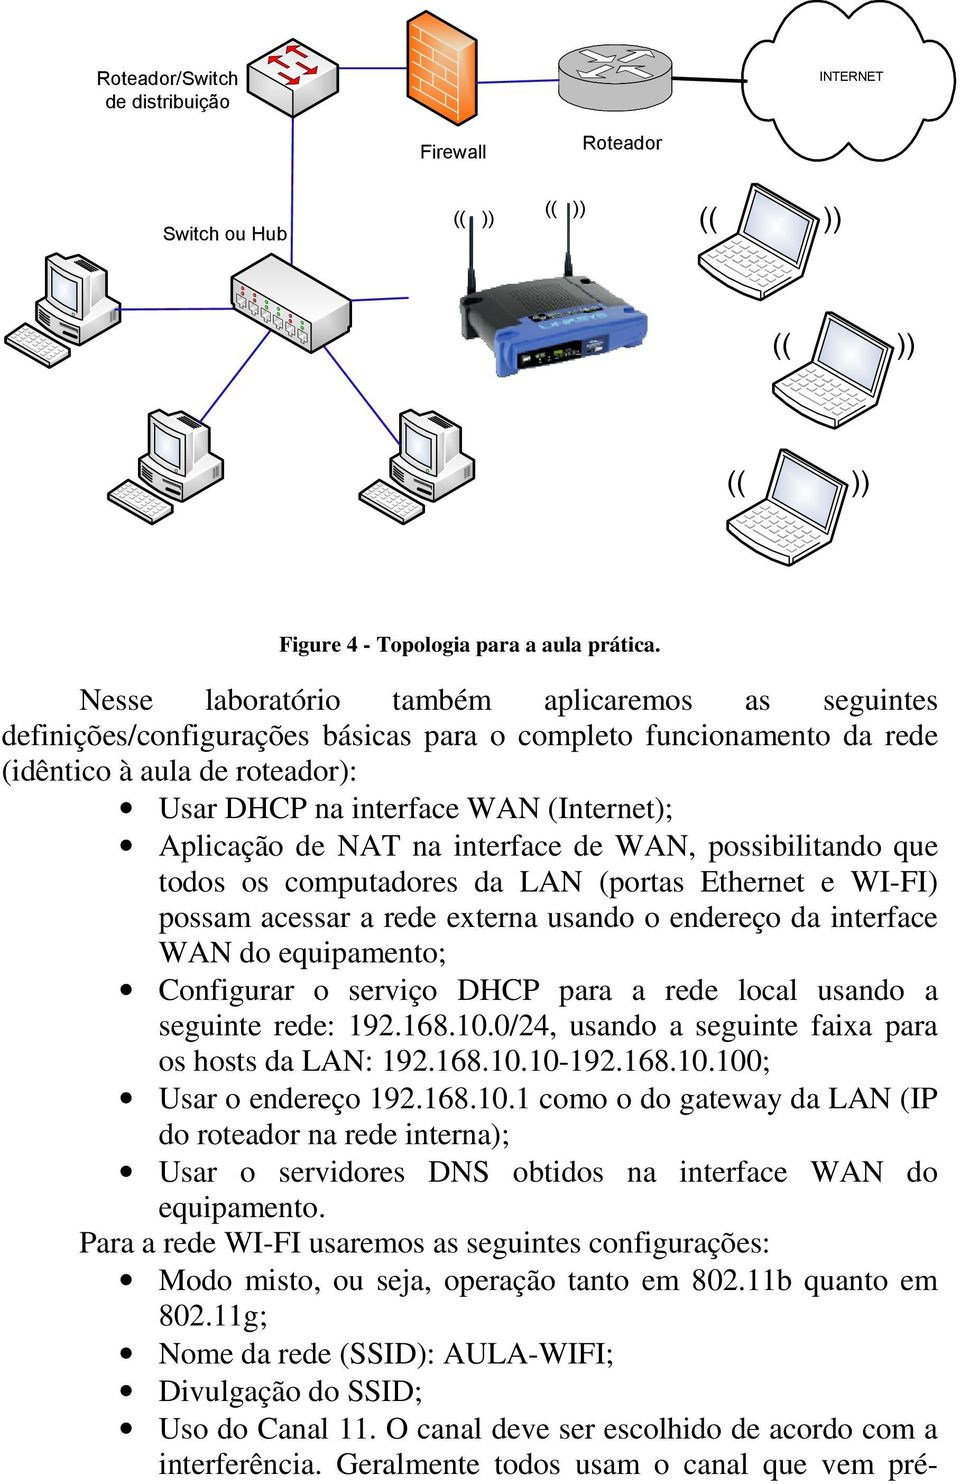 Aplicação de NAT na interface de WAN, possibilitando que todos os computadores da LAN (portas Ethernet e WI-FI) possam acessar a rede externa usando o endereço da interface WAN do equipamento;